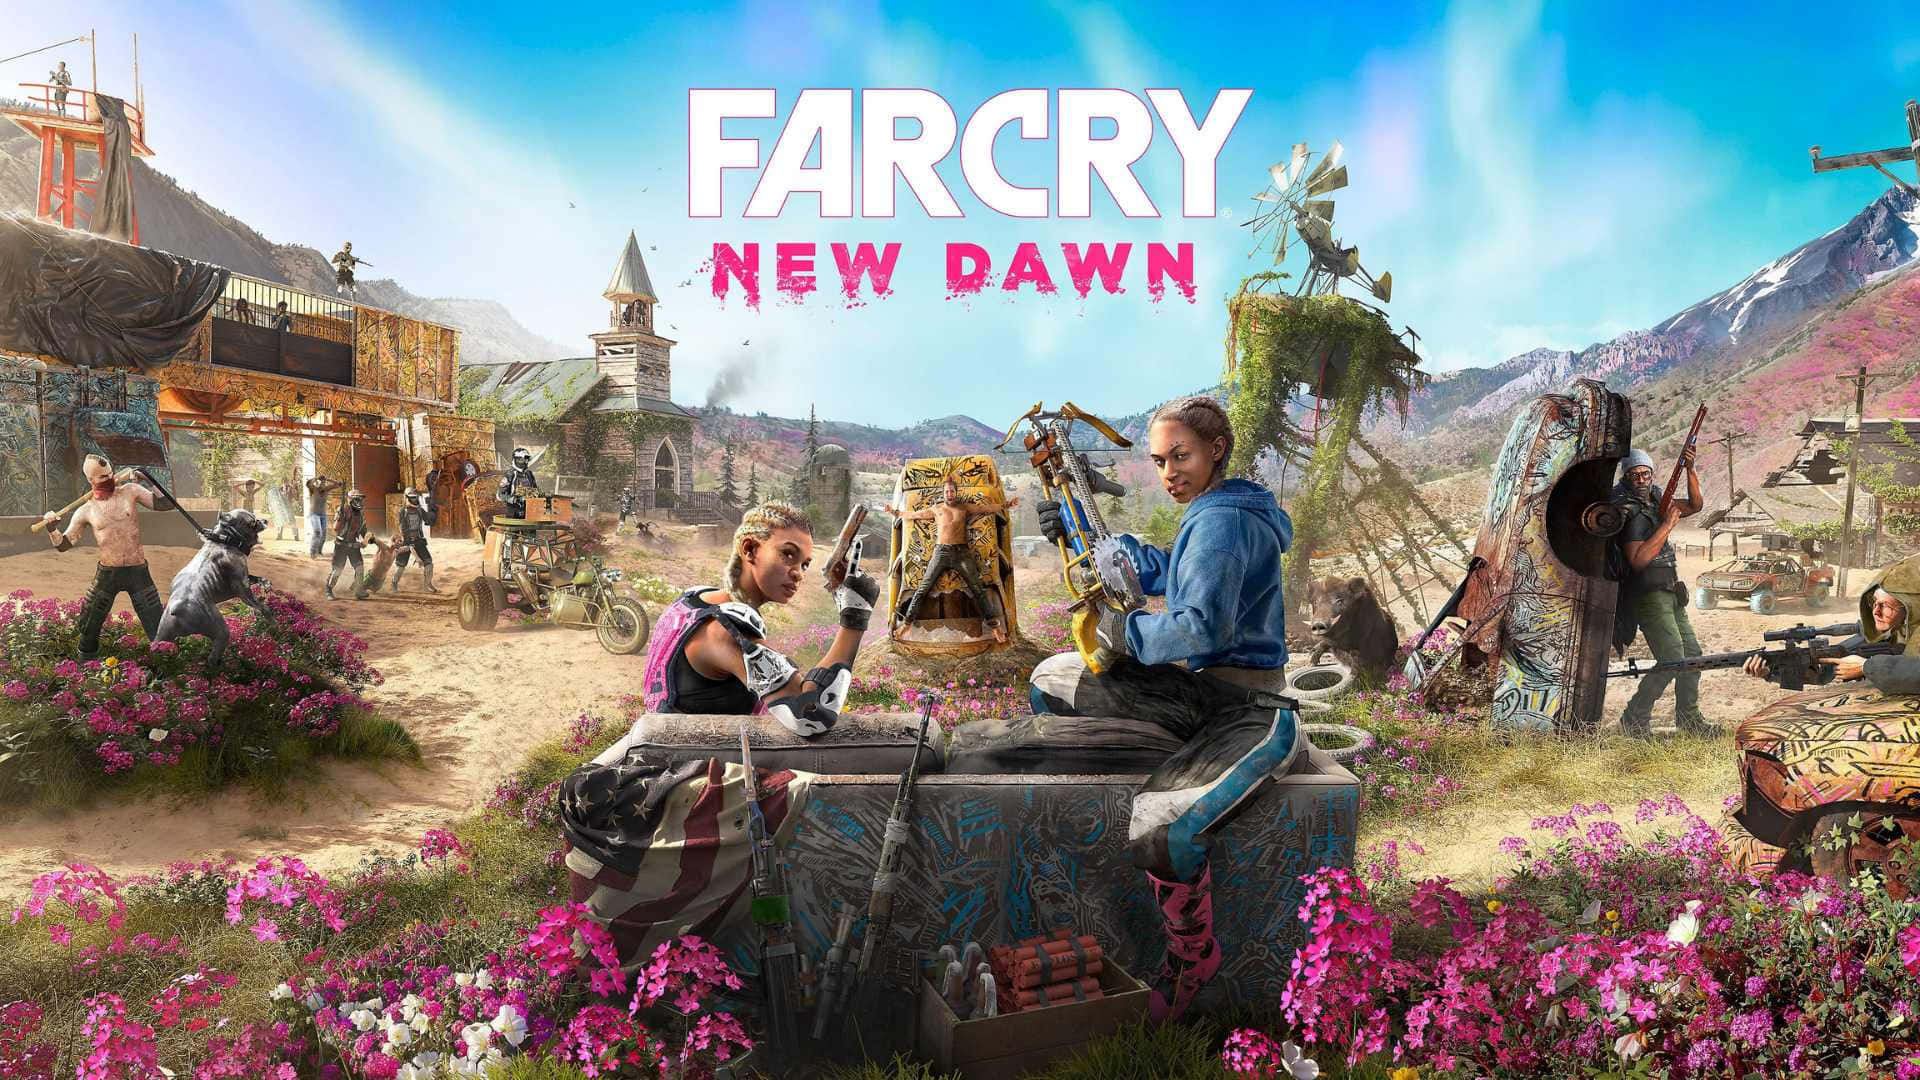 Farcry New Dawn - Dator - Dator - Dator - Dator - Dator